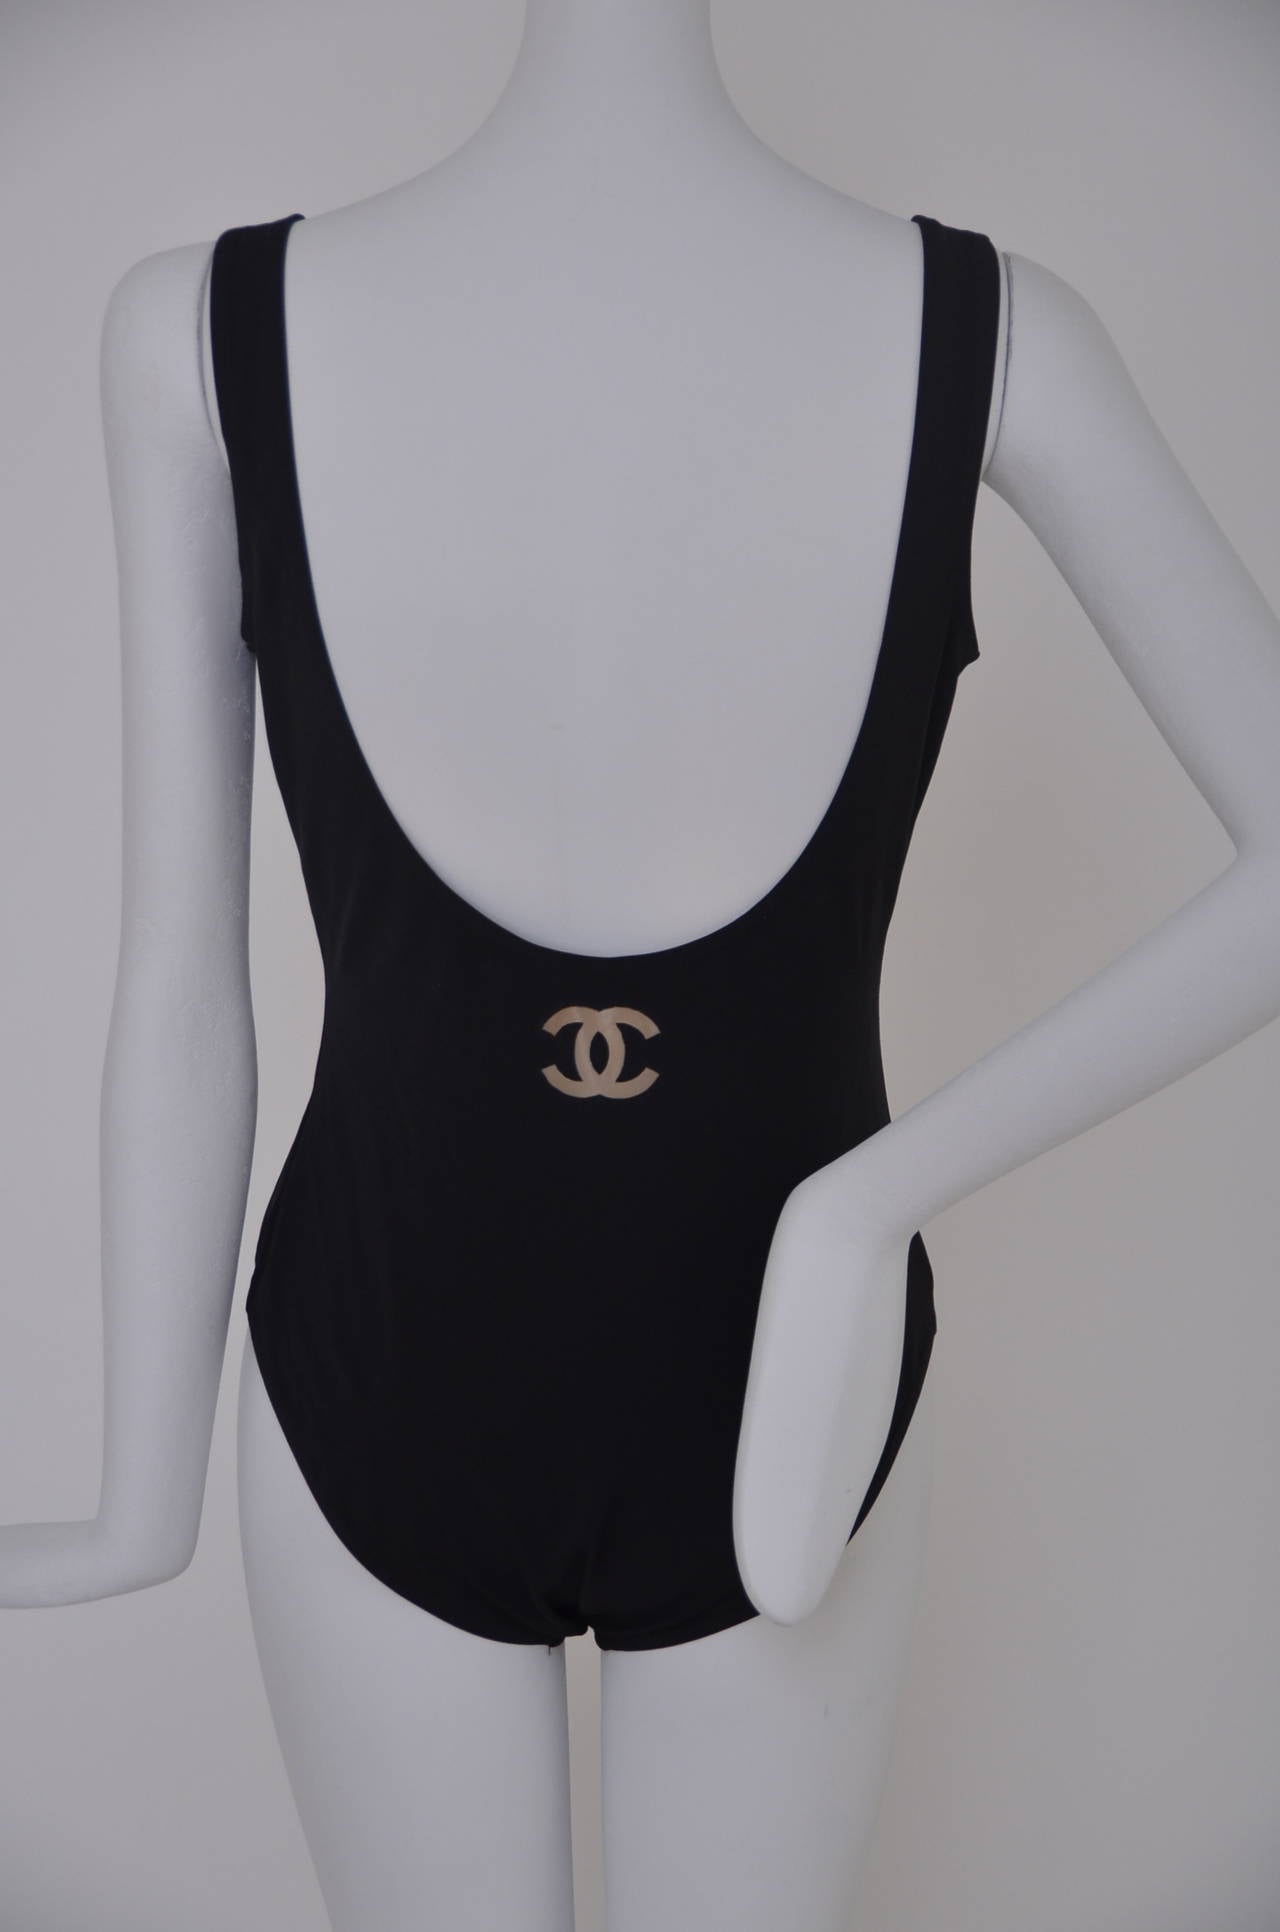 CHANEL 1998 off White Swimsuit Bodysuit CC black logo Sz.L